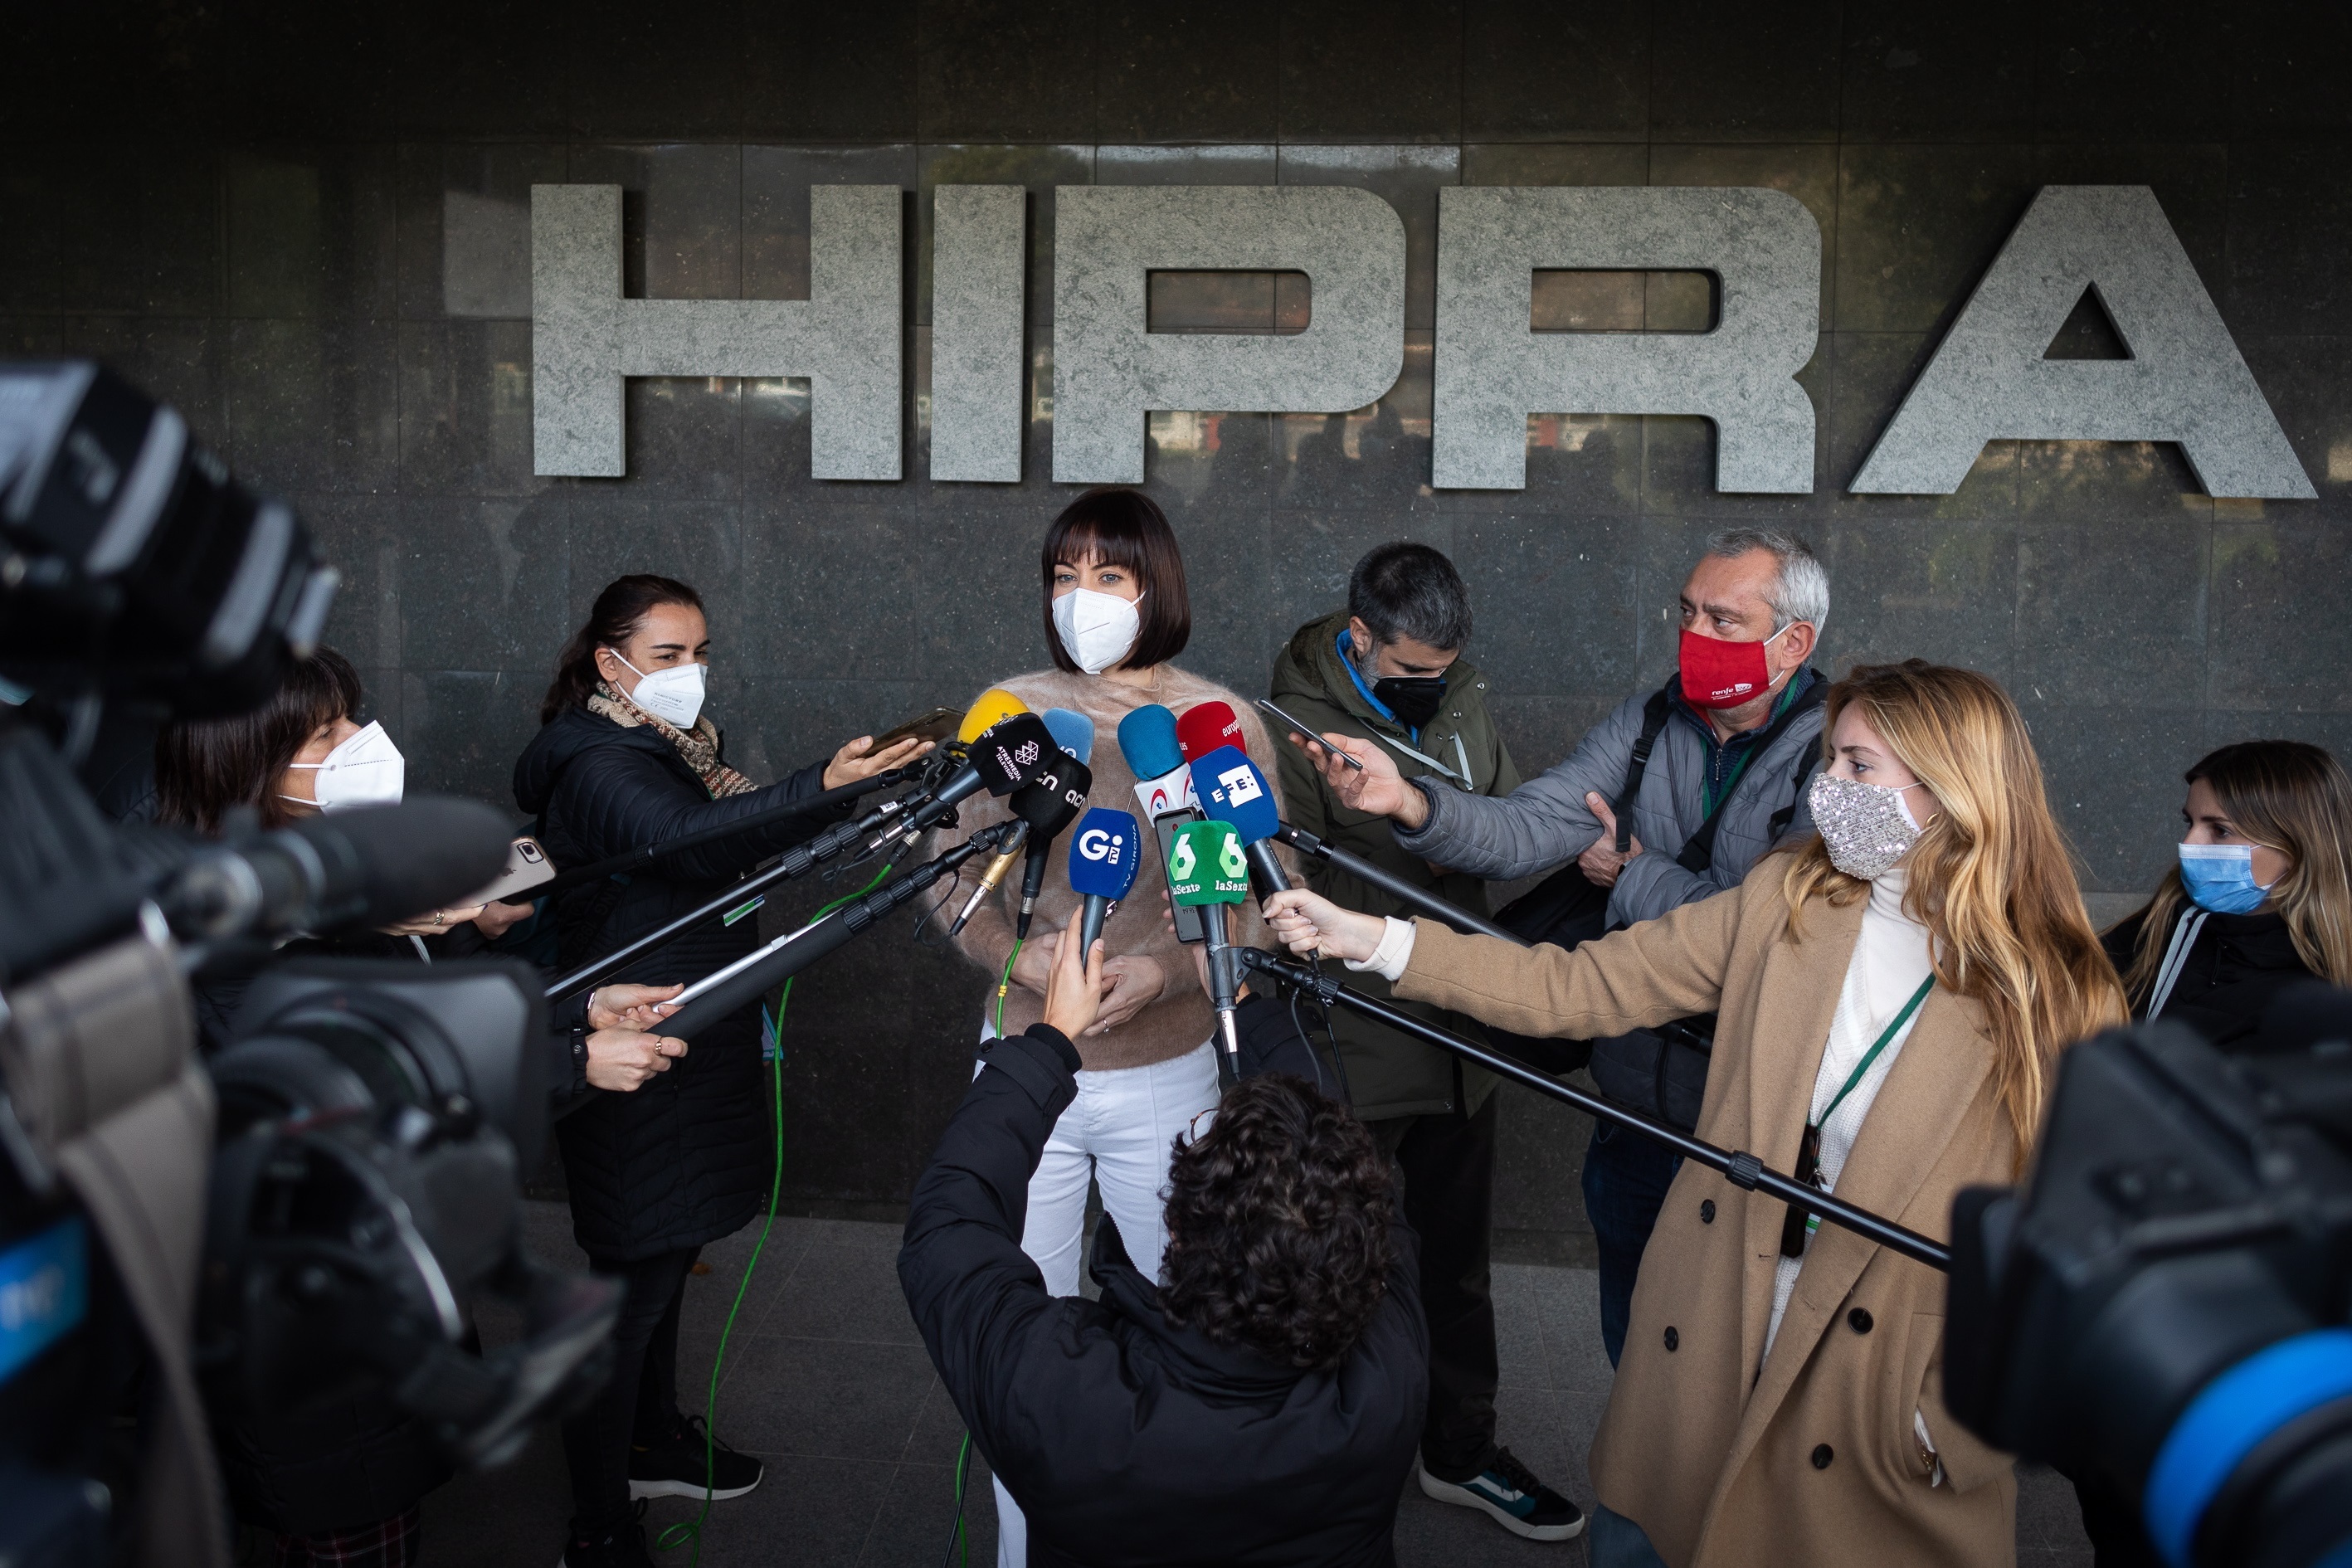 La futura vacuna española contra la covid en la que trabajan los laboratorios Hipra,  presenta buenos resultados frente a la variante ómicron. (Foto Prensa Libre: EFE)